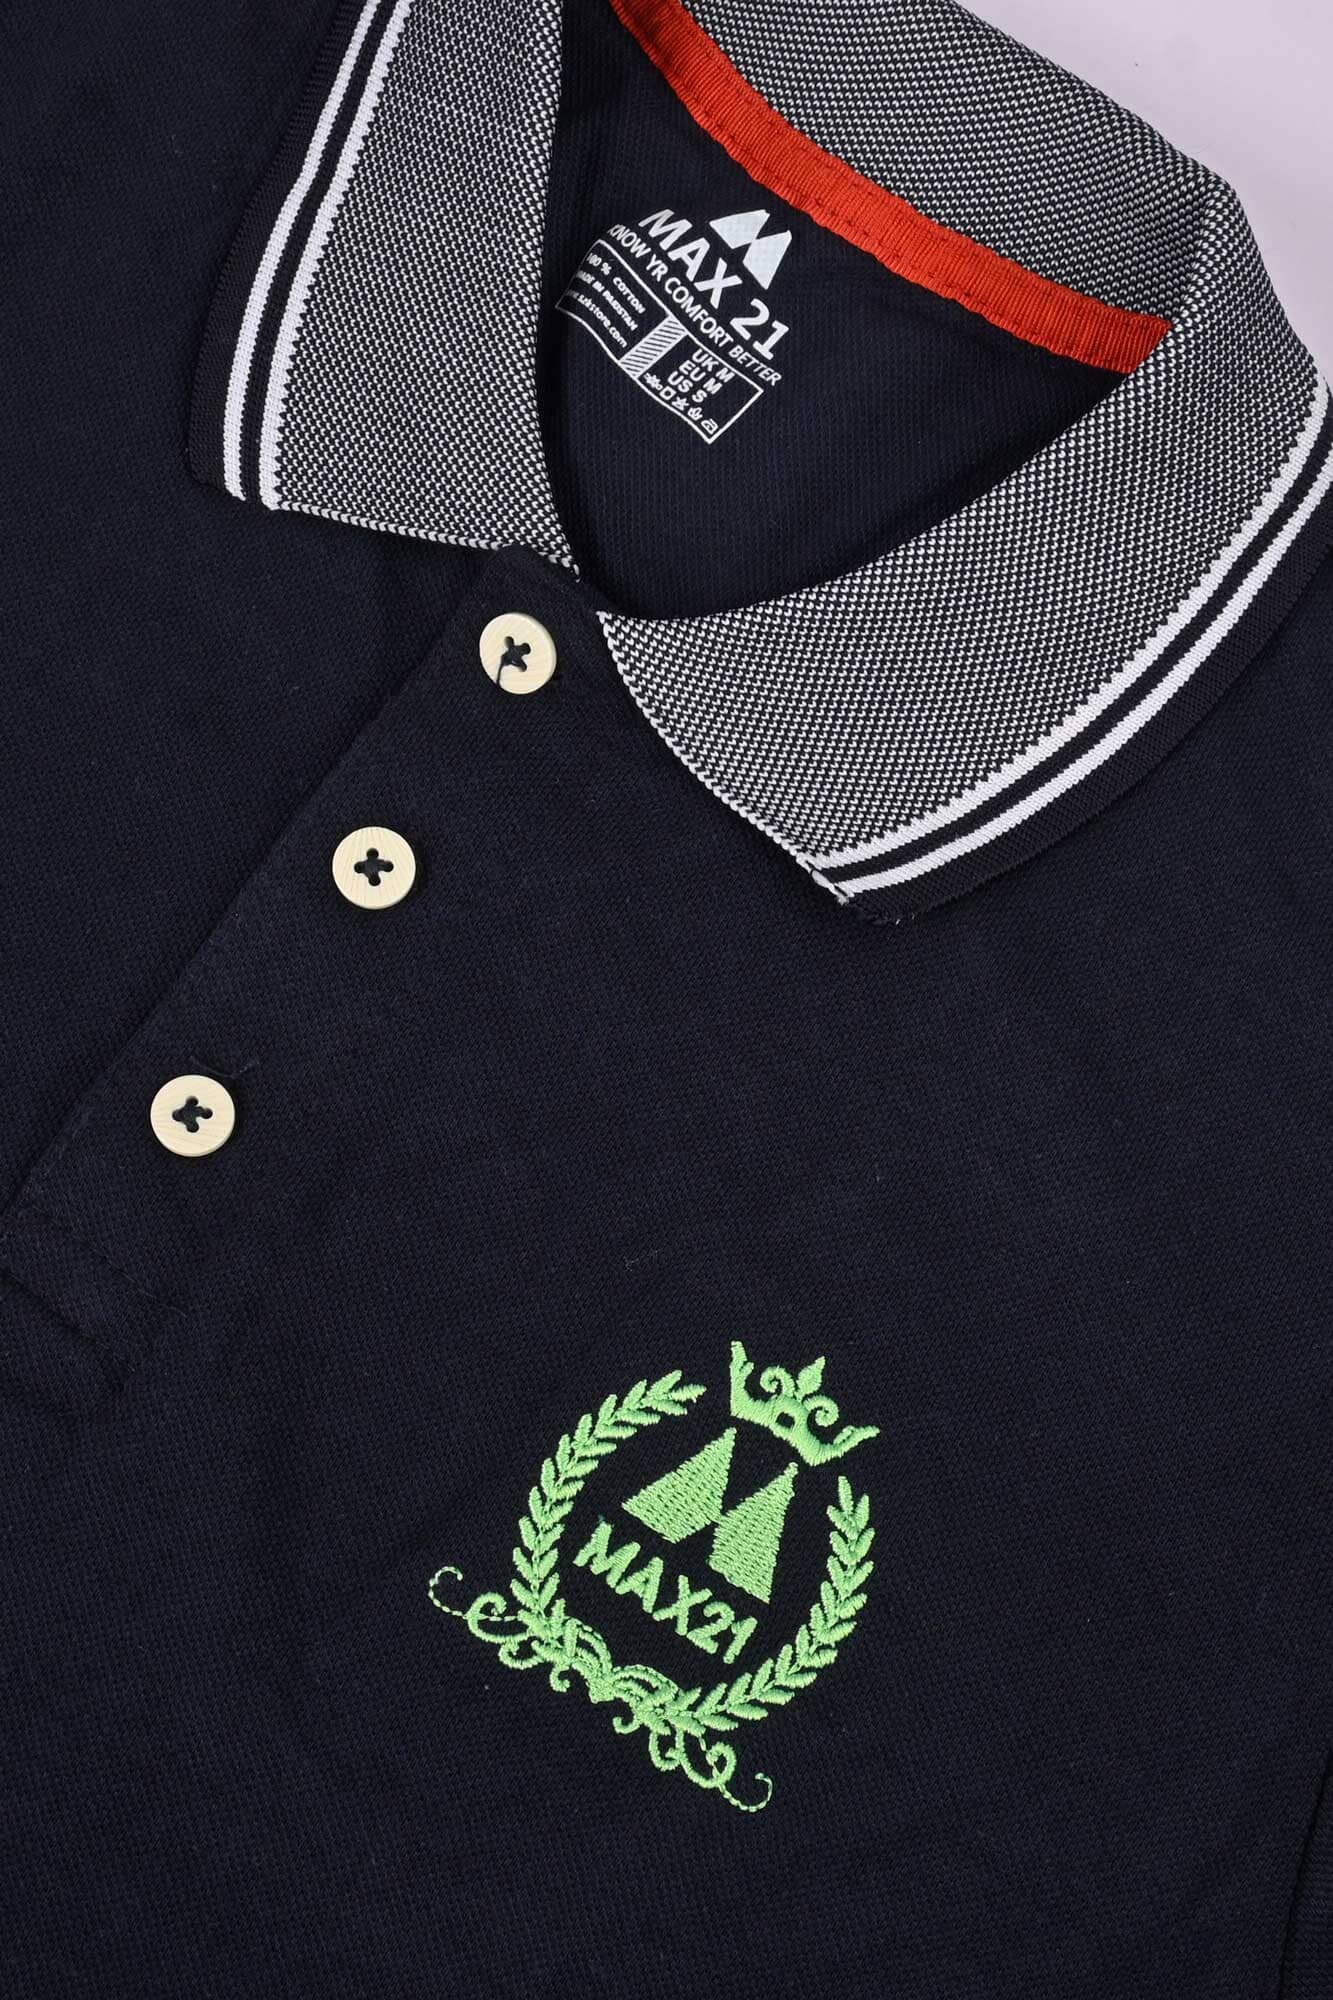 Max 21 Men's Crown Max Embroidered Pique Polo Shirt Men's Polo Shirt SZK 